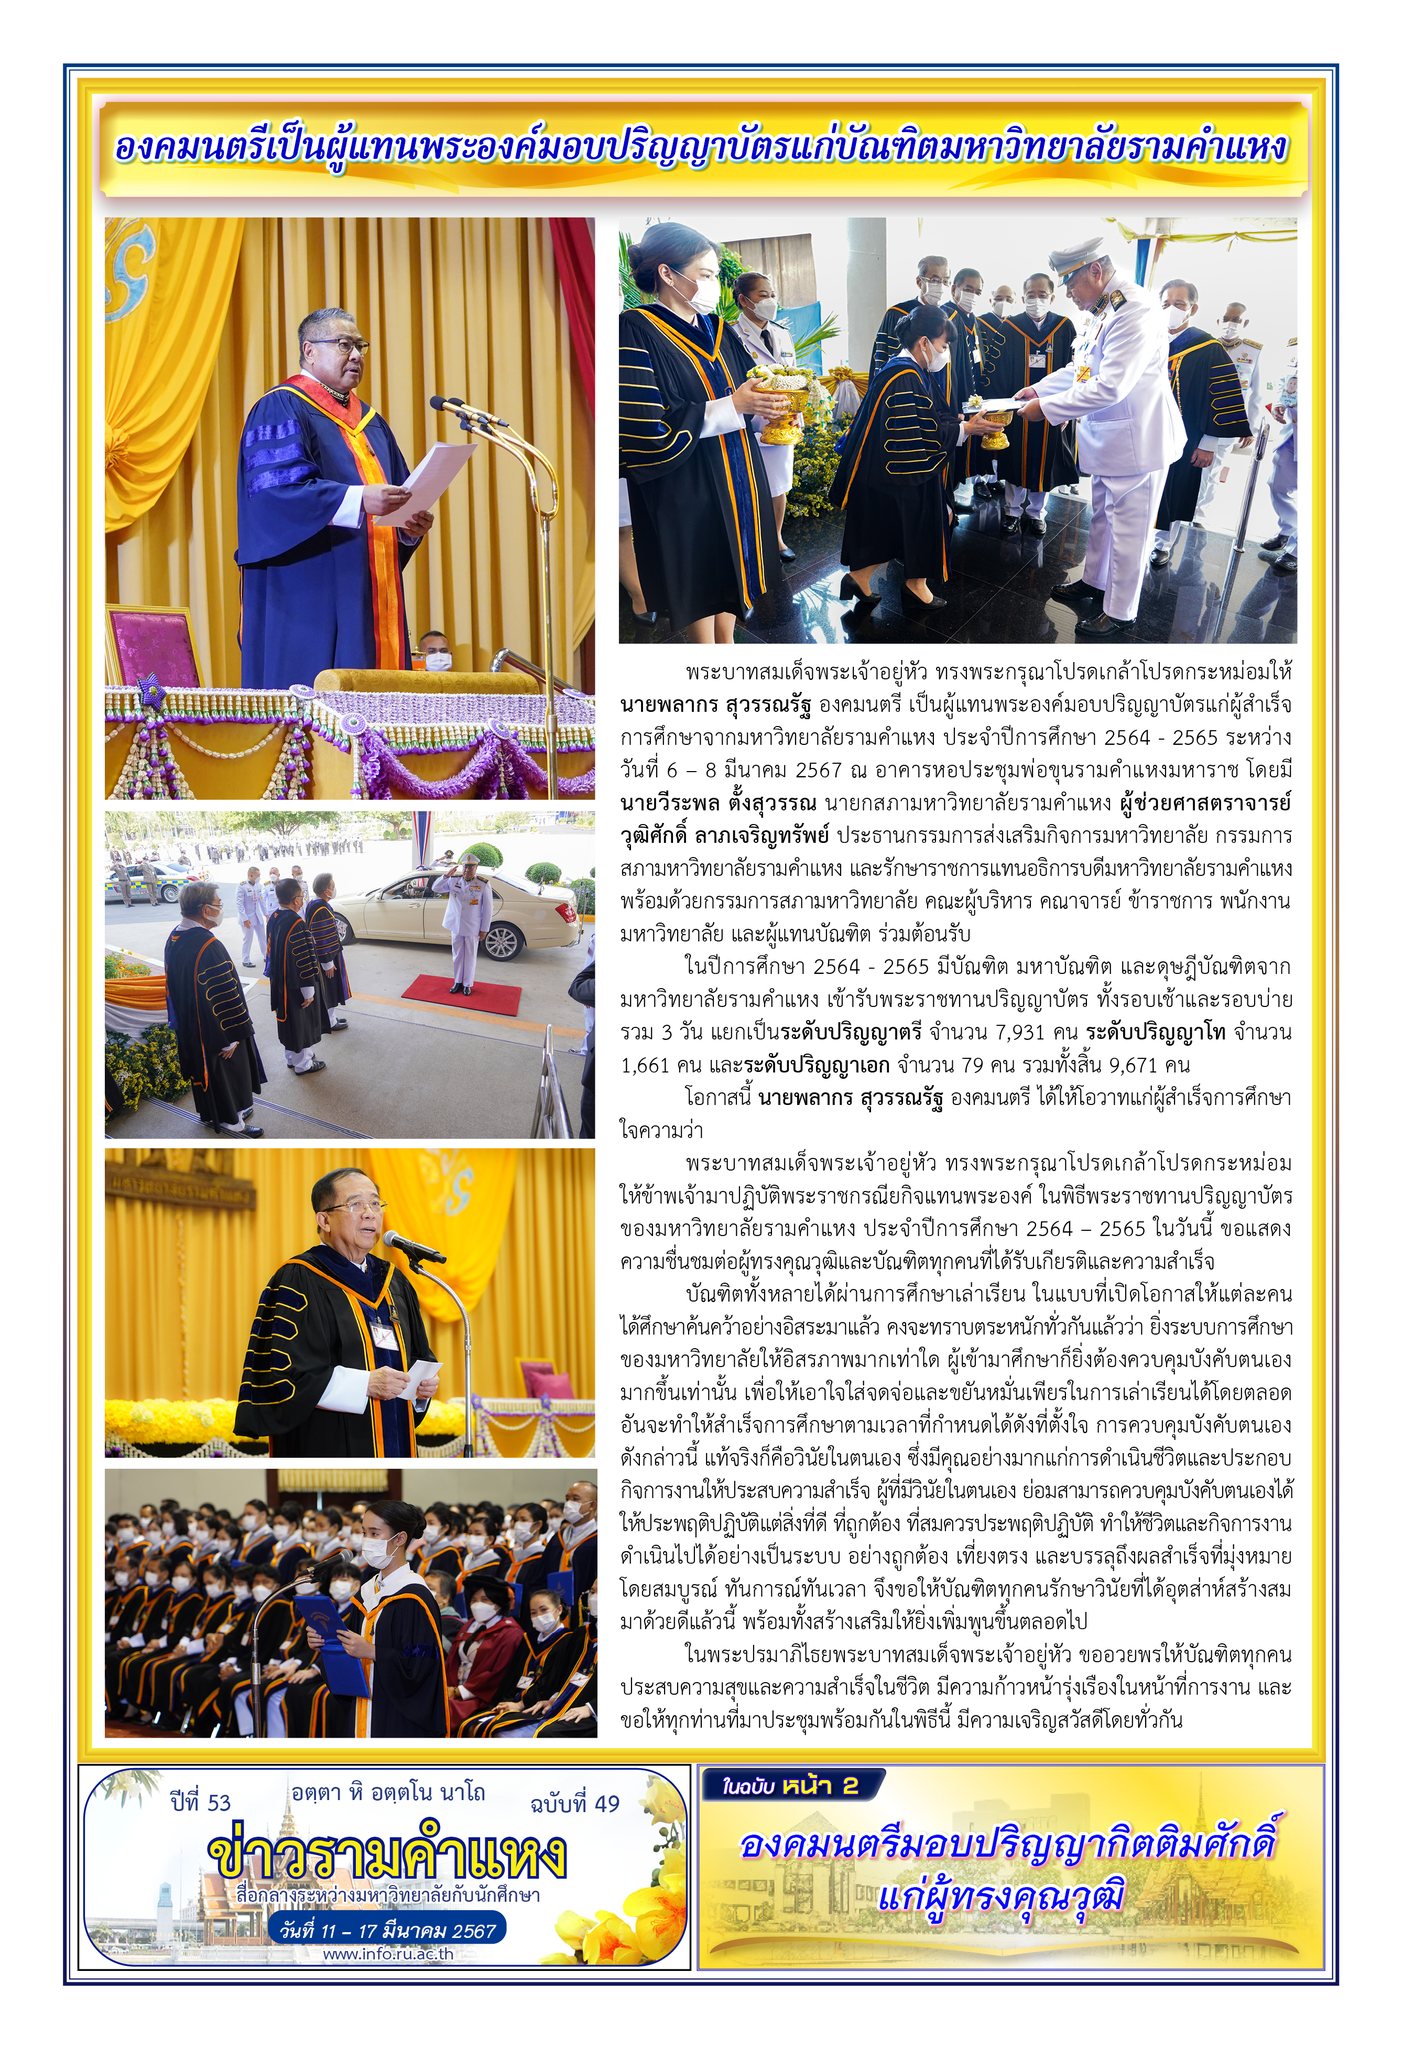 ข่าวรามคำแหง ปีที่ 53 ฉบับที่ 49 วันที่ 11-17 มีนาคม 2567 / Ramkhamhaeng News. Year 53, Issue 49, 11-17 March 2024